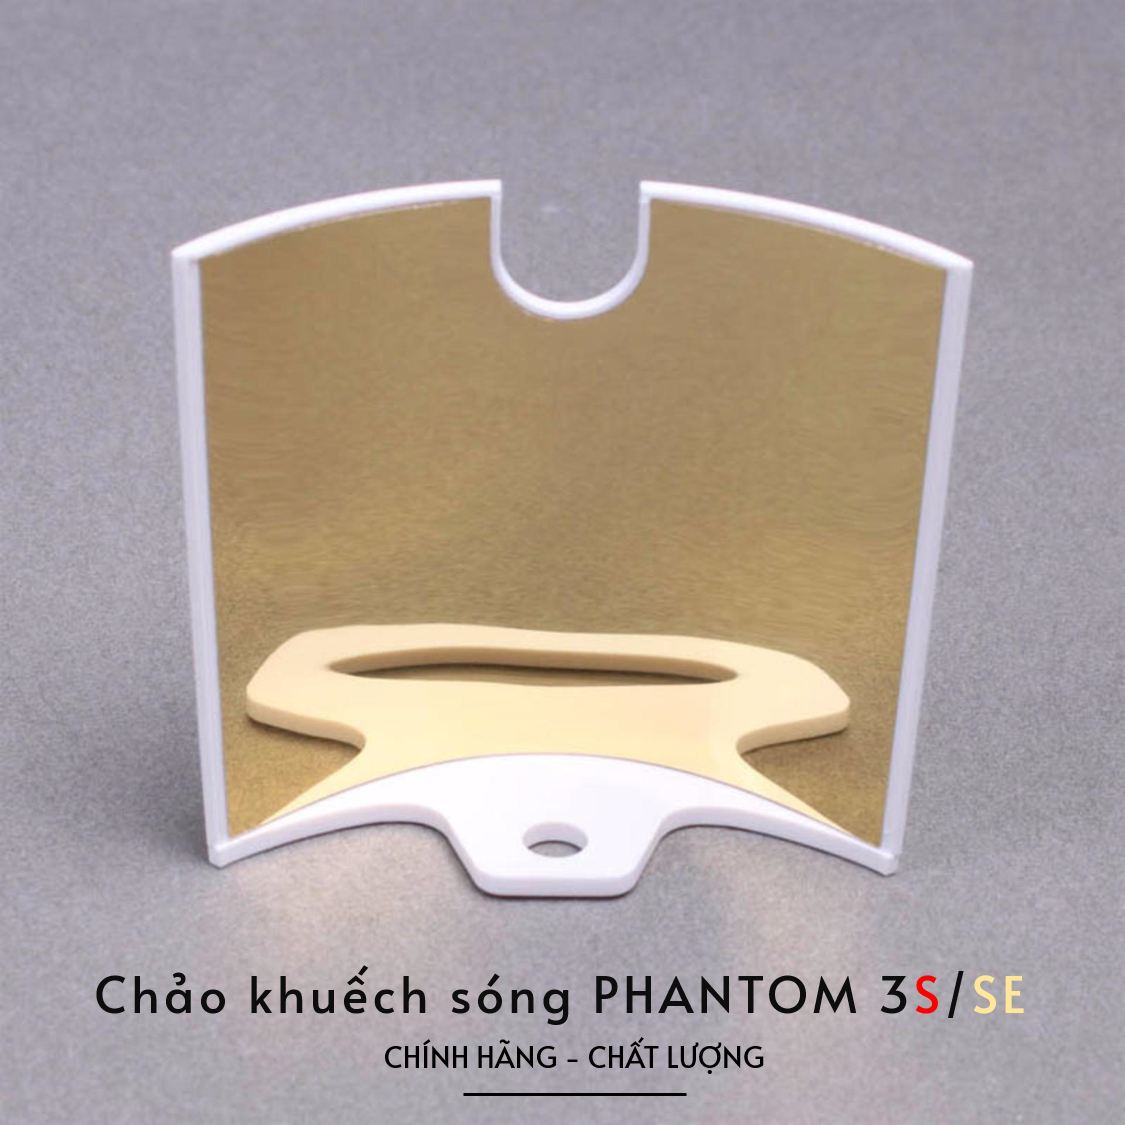 khuech-song-phantom-3s-se